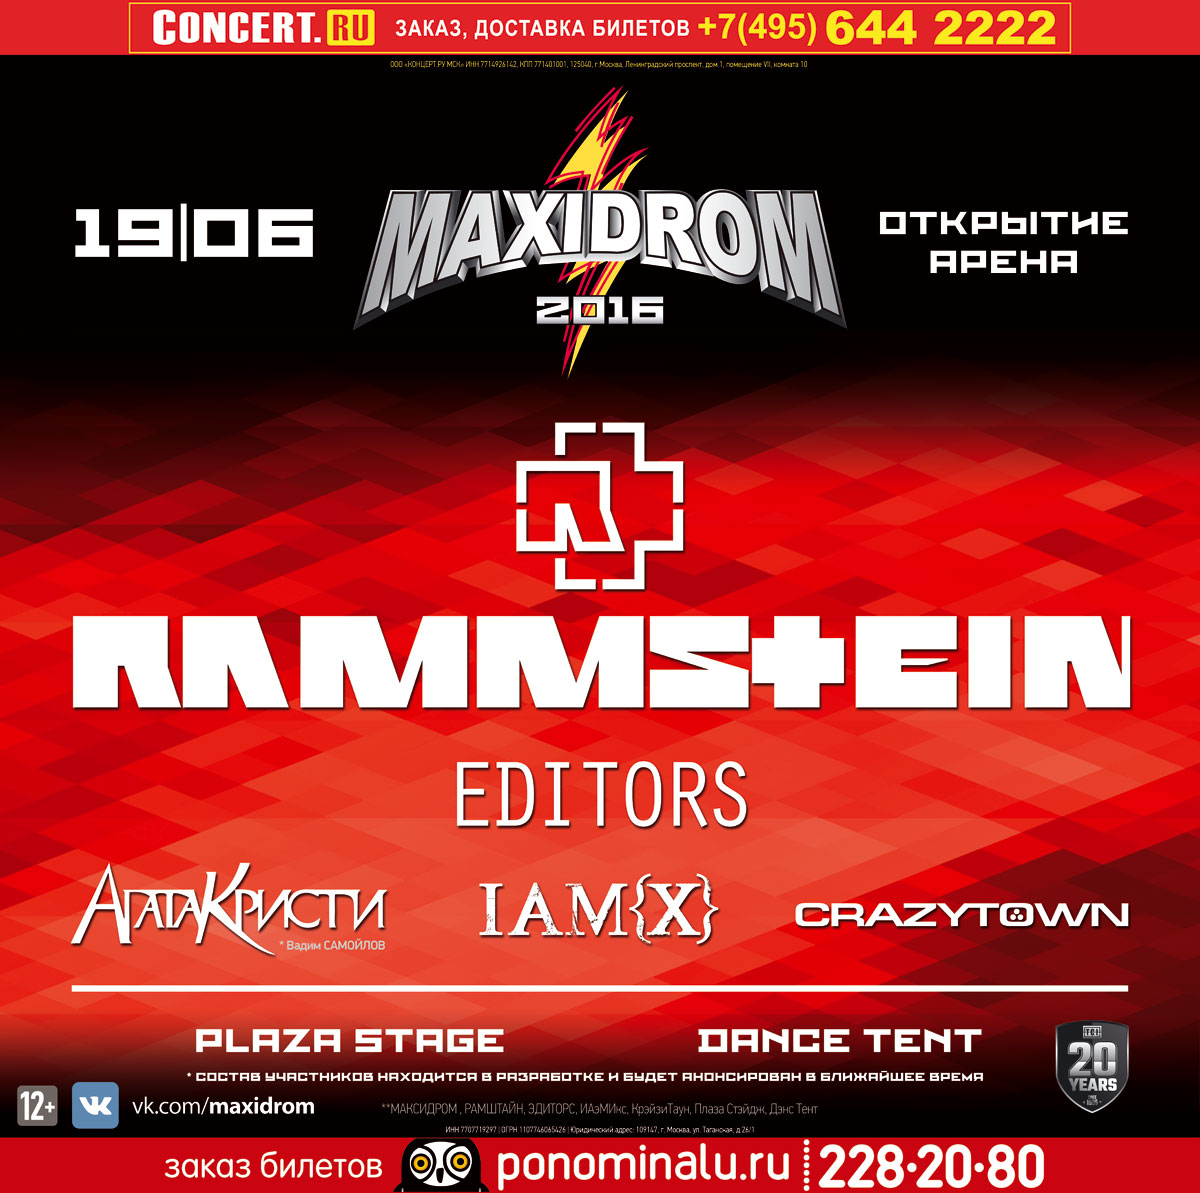 Легендарный Maxidrom от радио Максимум состоится в 2016 году